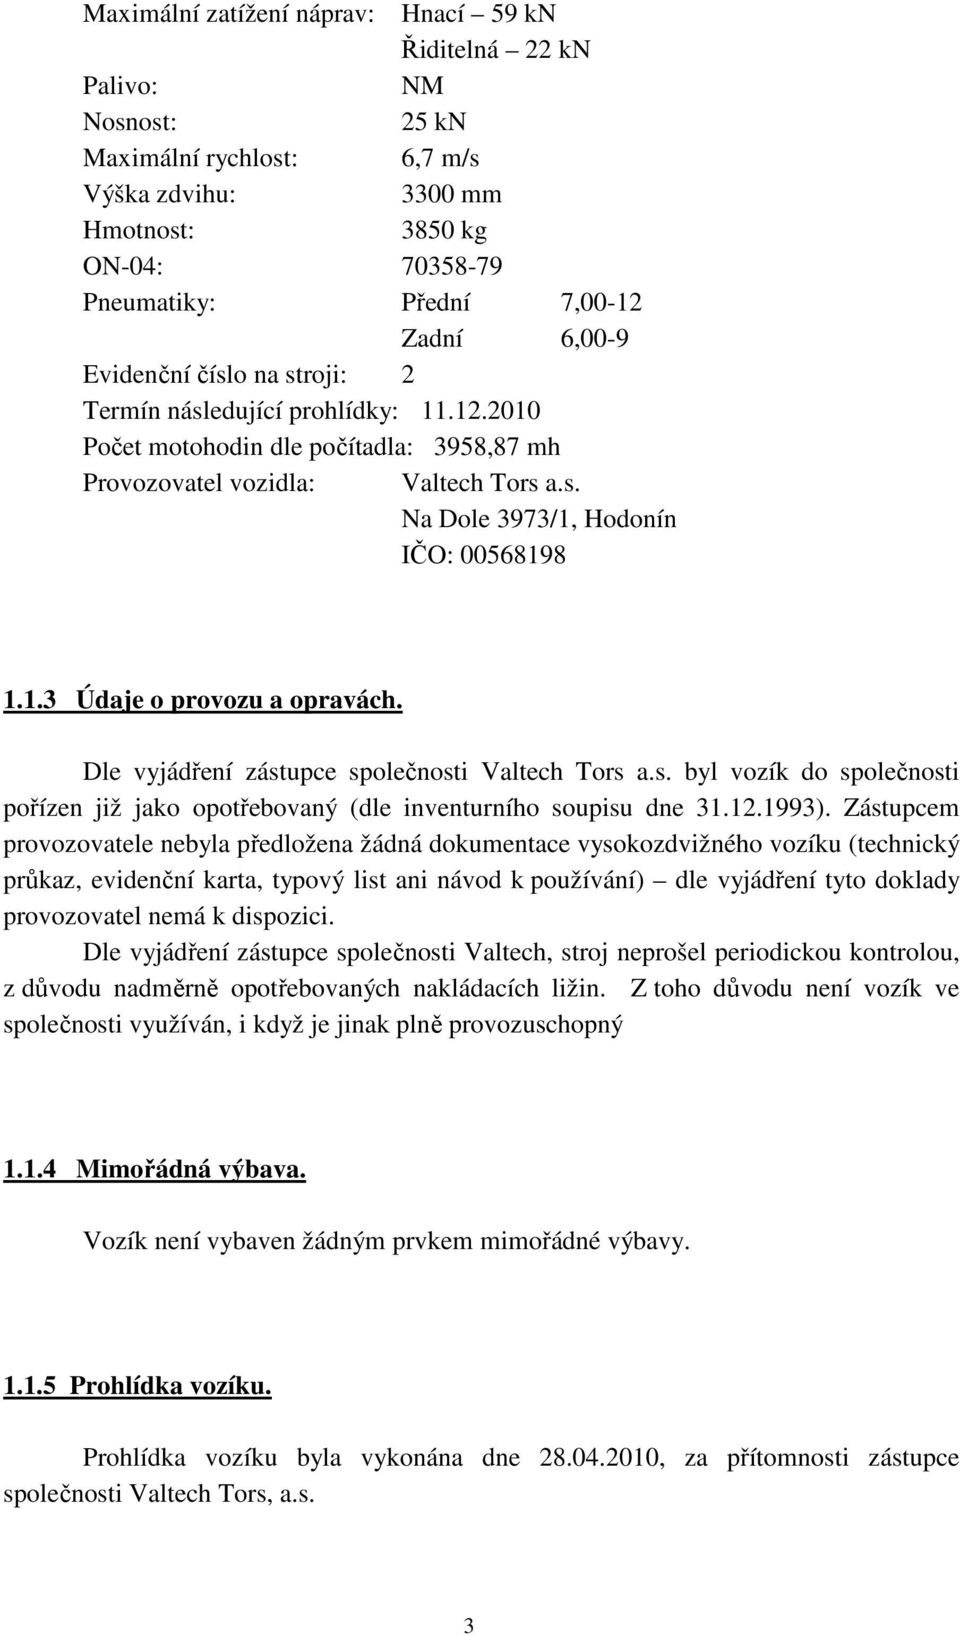 1.3 Údaje o provozu a opravách. Dle vyjádření zástupce společnosti Valtech Tors a.s. byl vozík do společnosti pořízen již jako opotřebovaný (dle inventurního soupisu dne 31.12.1993).